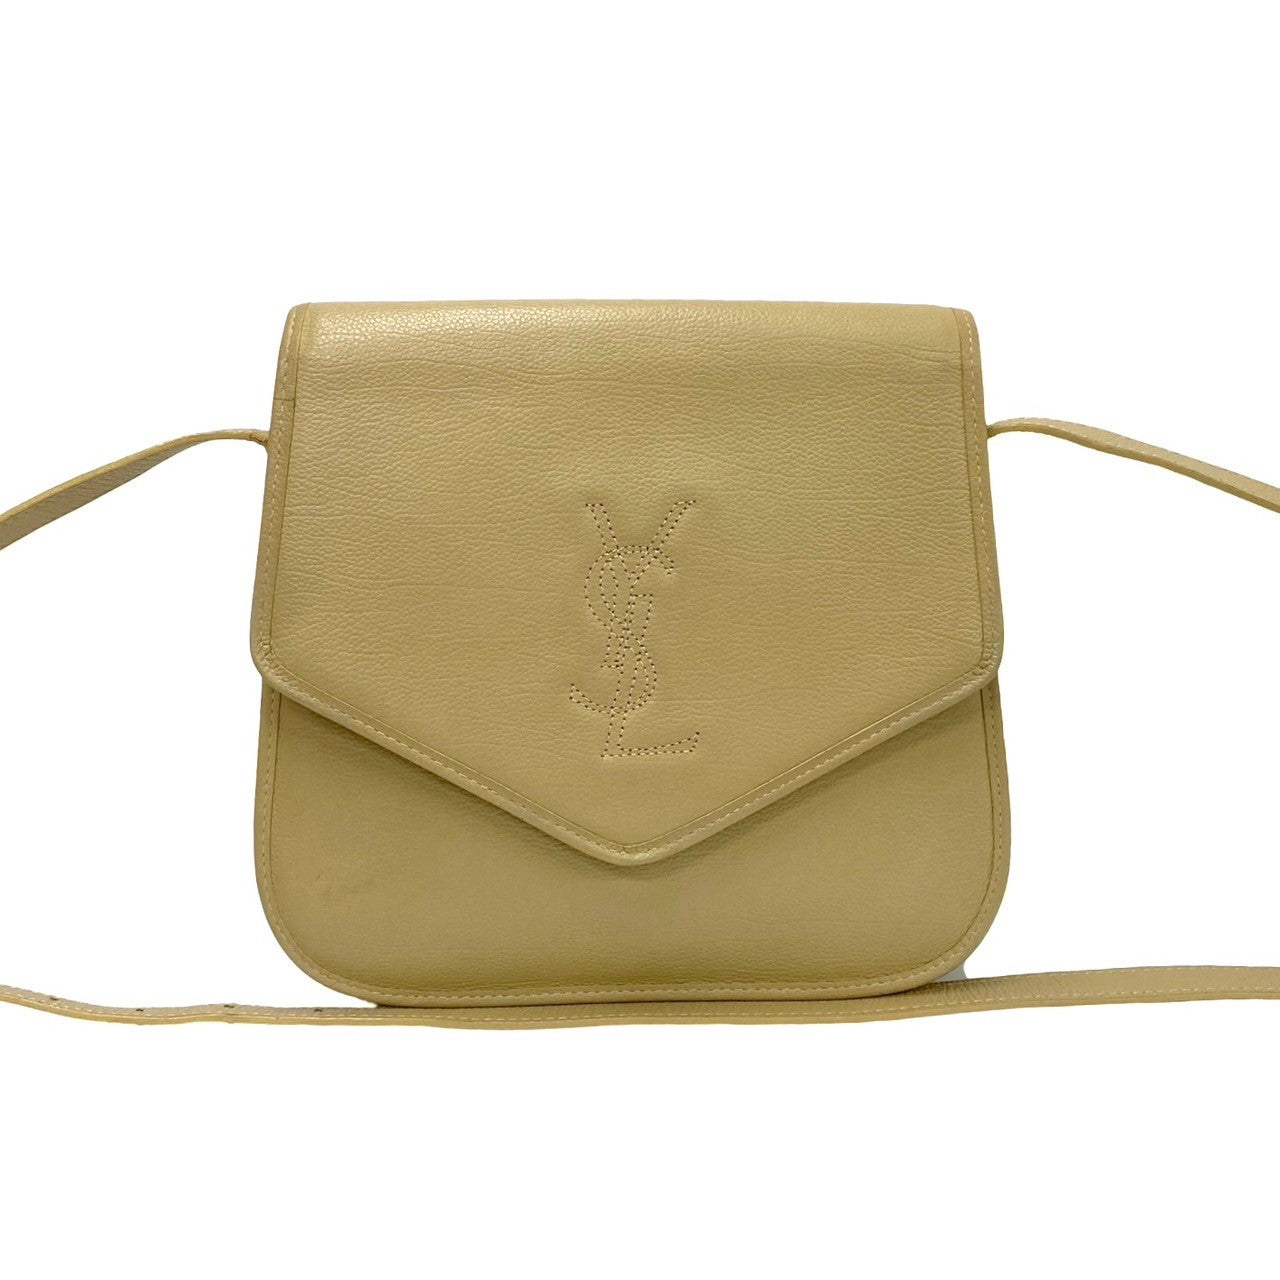 Yves Saint Laurent Vintage YSL Logo Leather Shoulder Bag Leather Shoulder Bag 69130 in Good condition